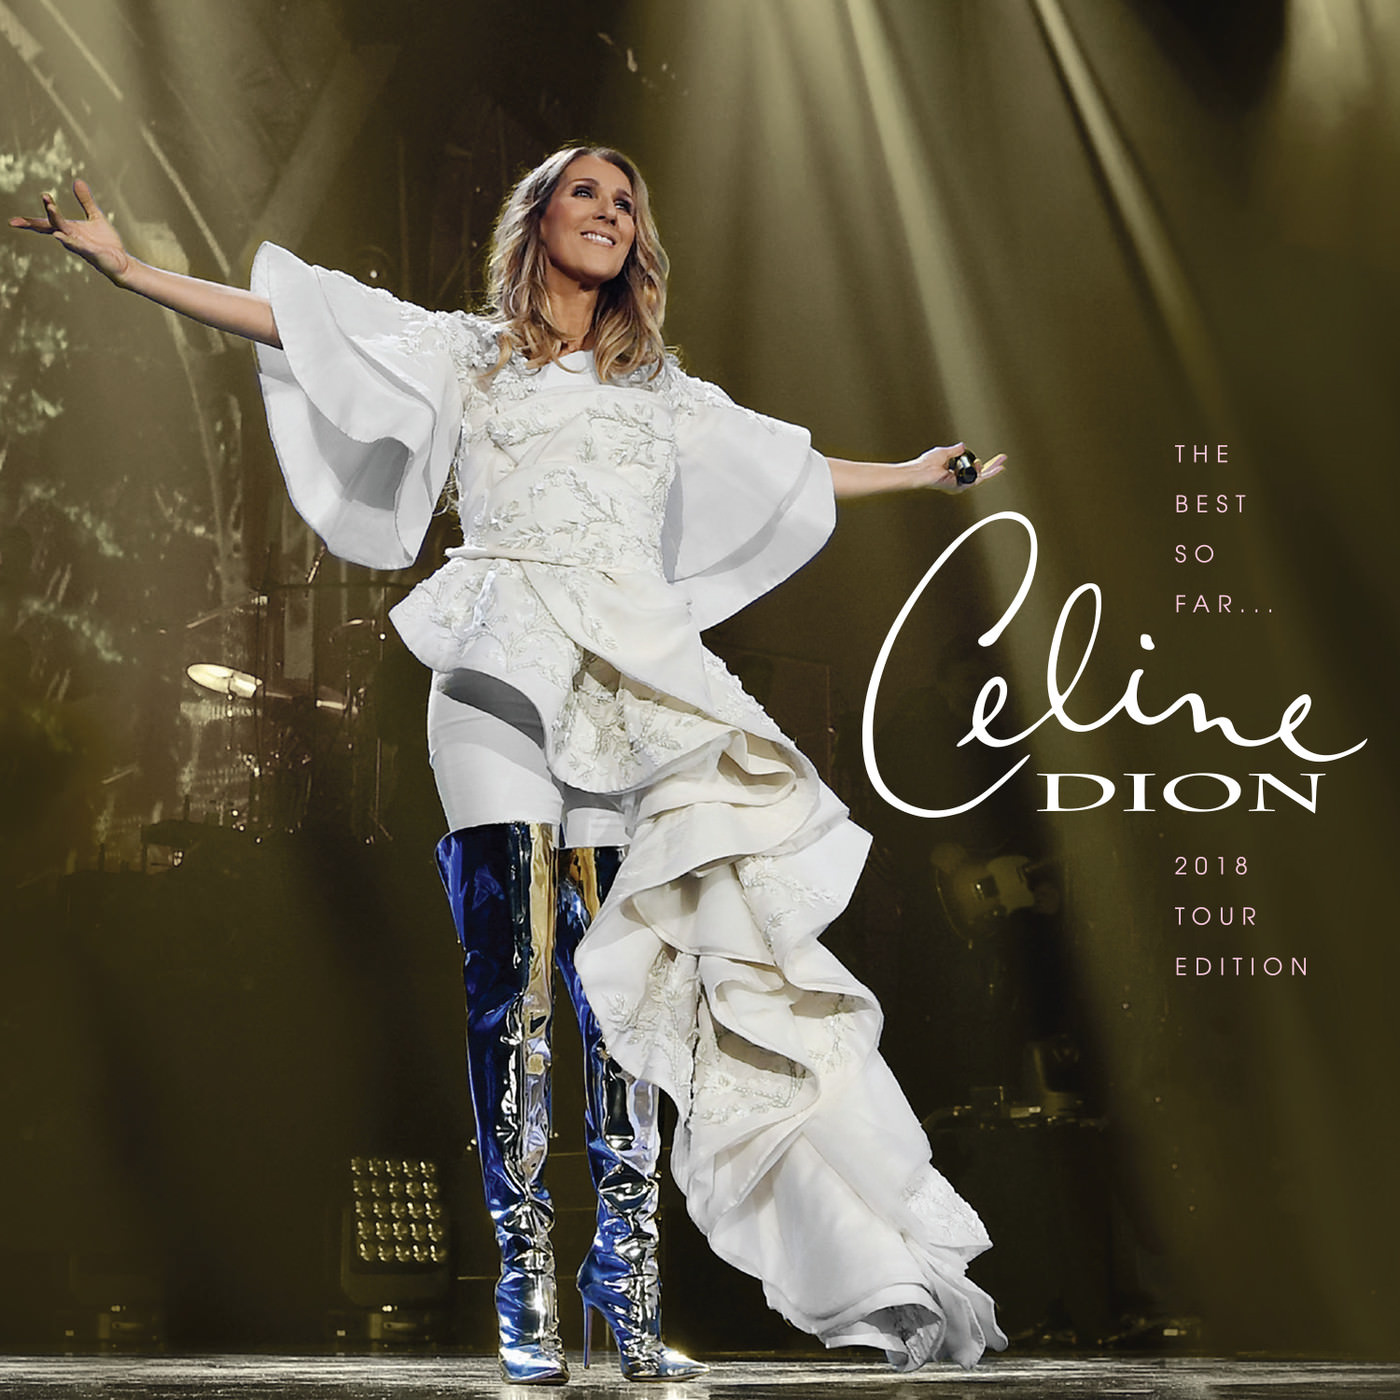 Celine Dion - The Best So Far… 2018 Tour Edition (2018) [FLAC 24bit/44,1kHz]